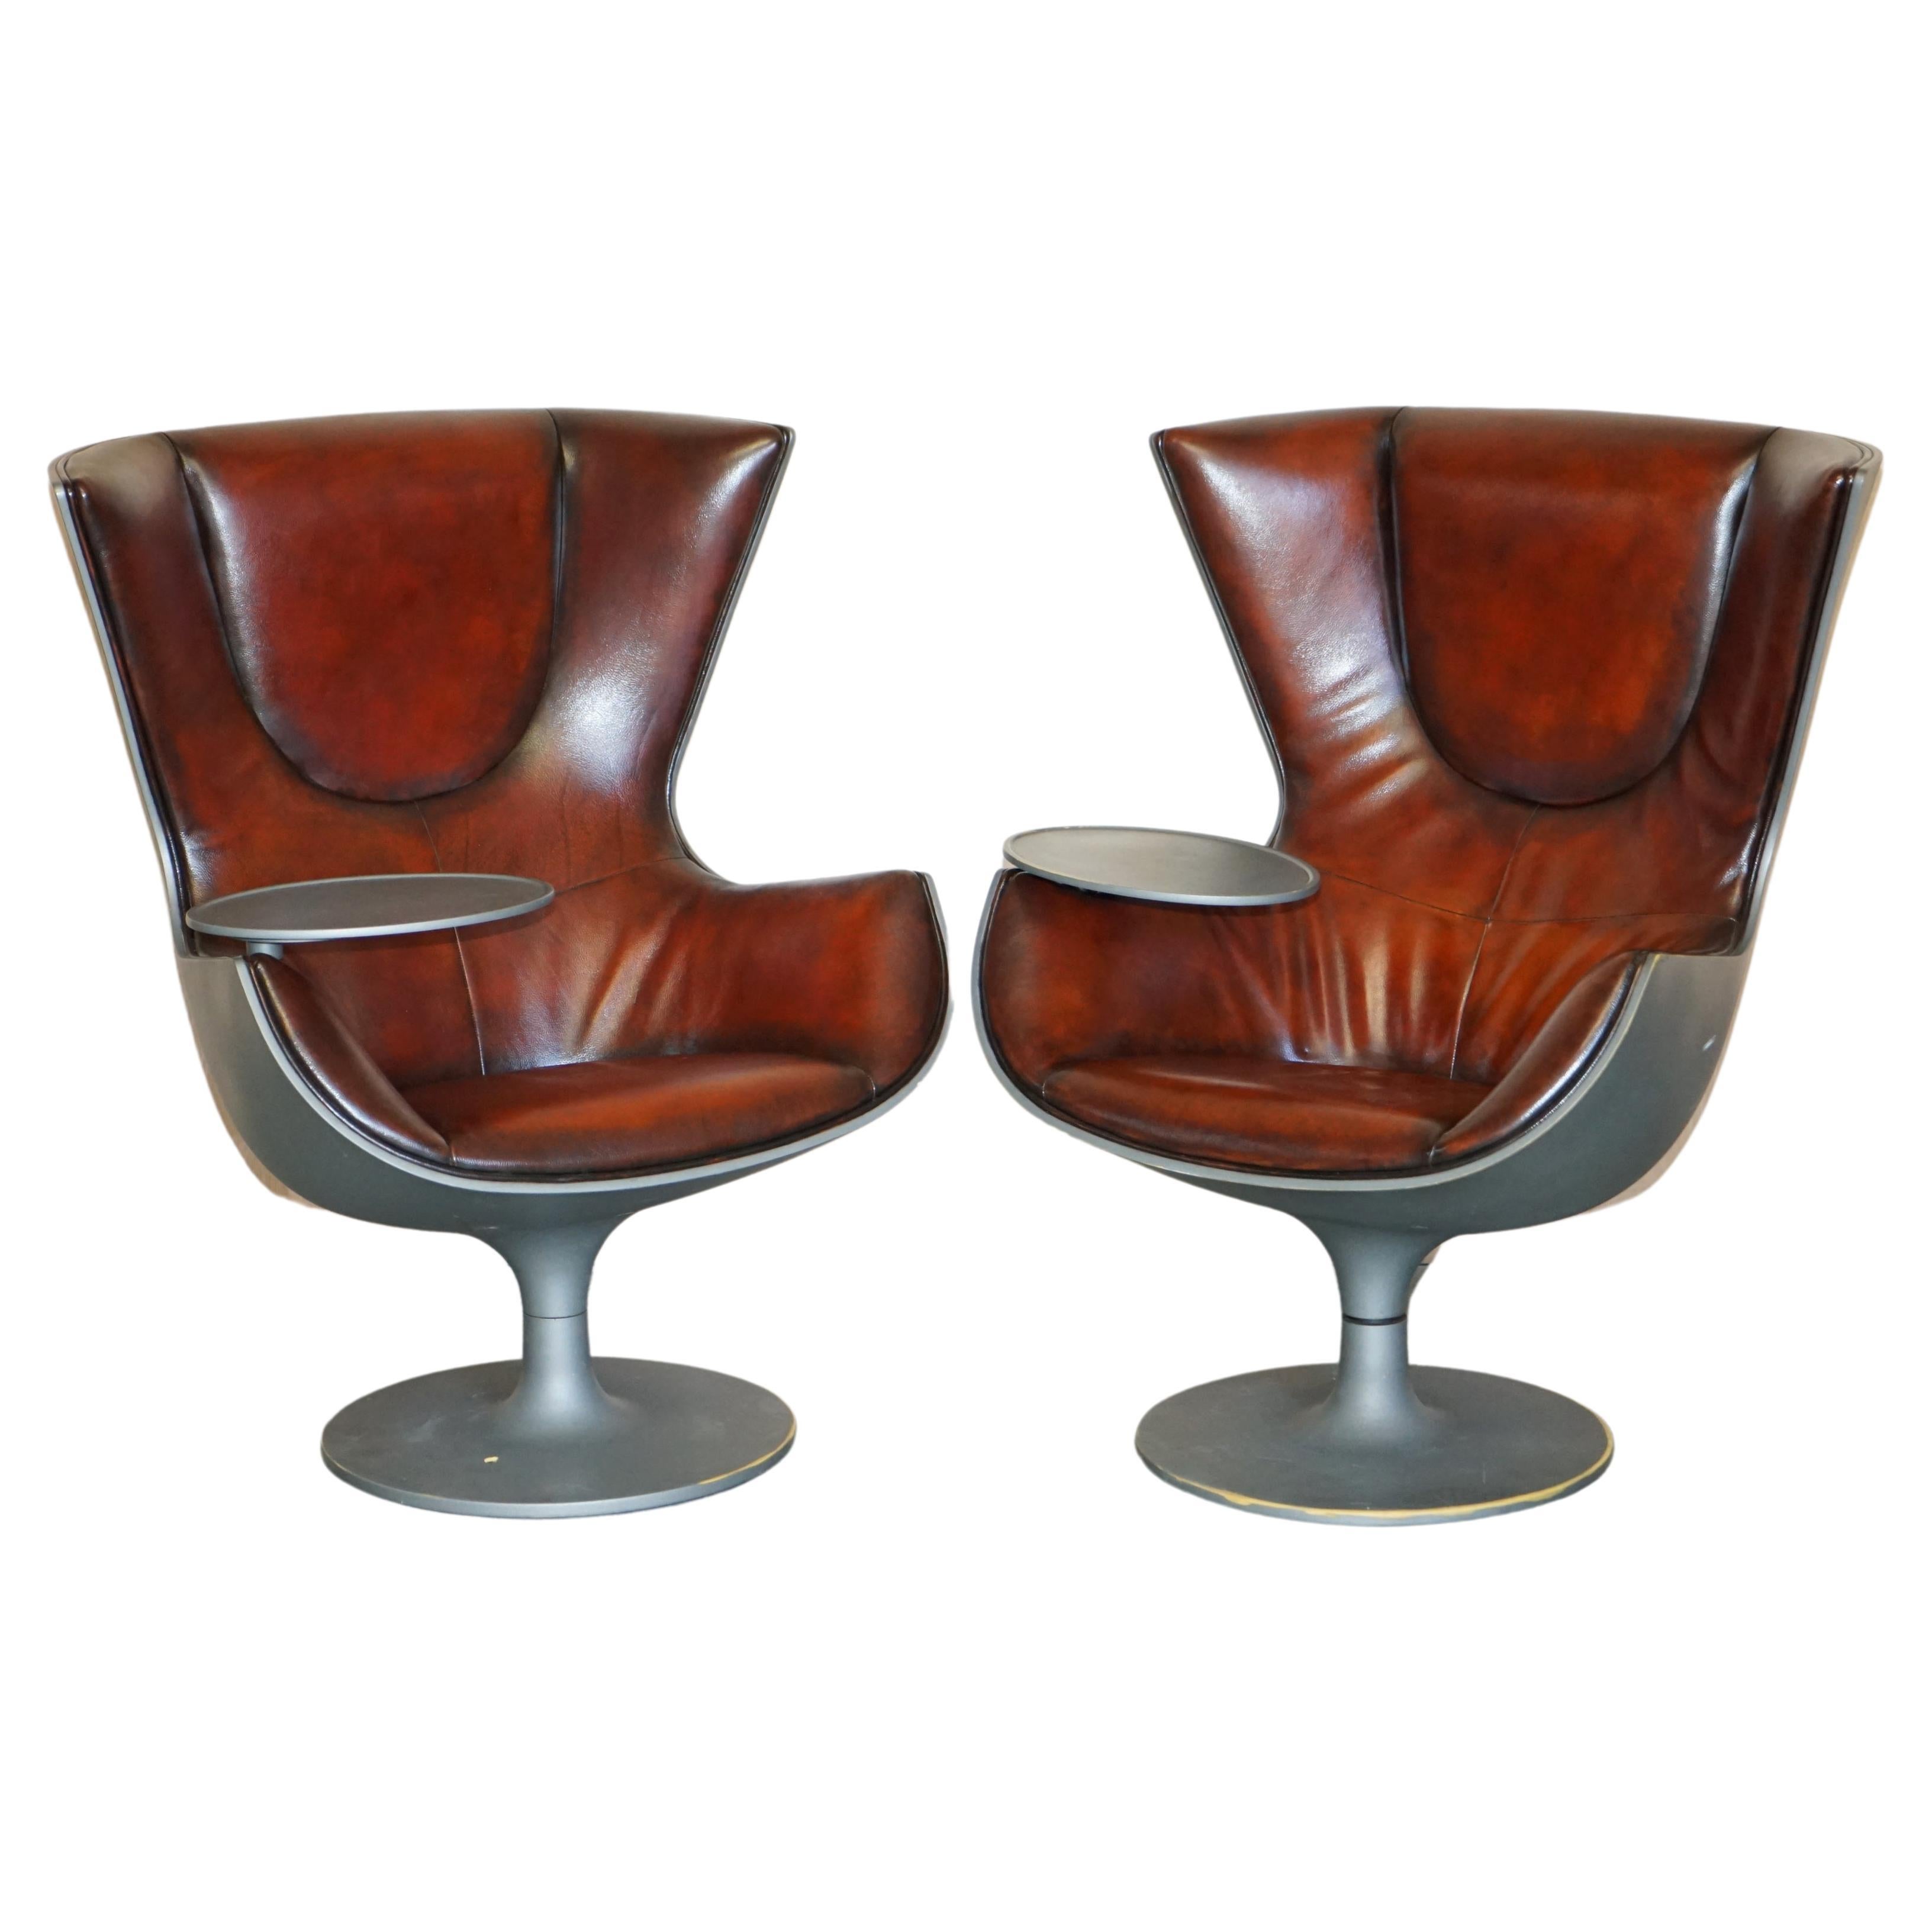 Paire de fauteuils en cuir marron Cassina Eurostar Egg de Philippe Starck, uniques en leur genre